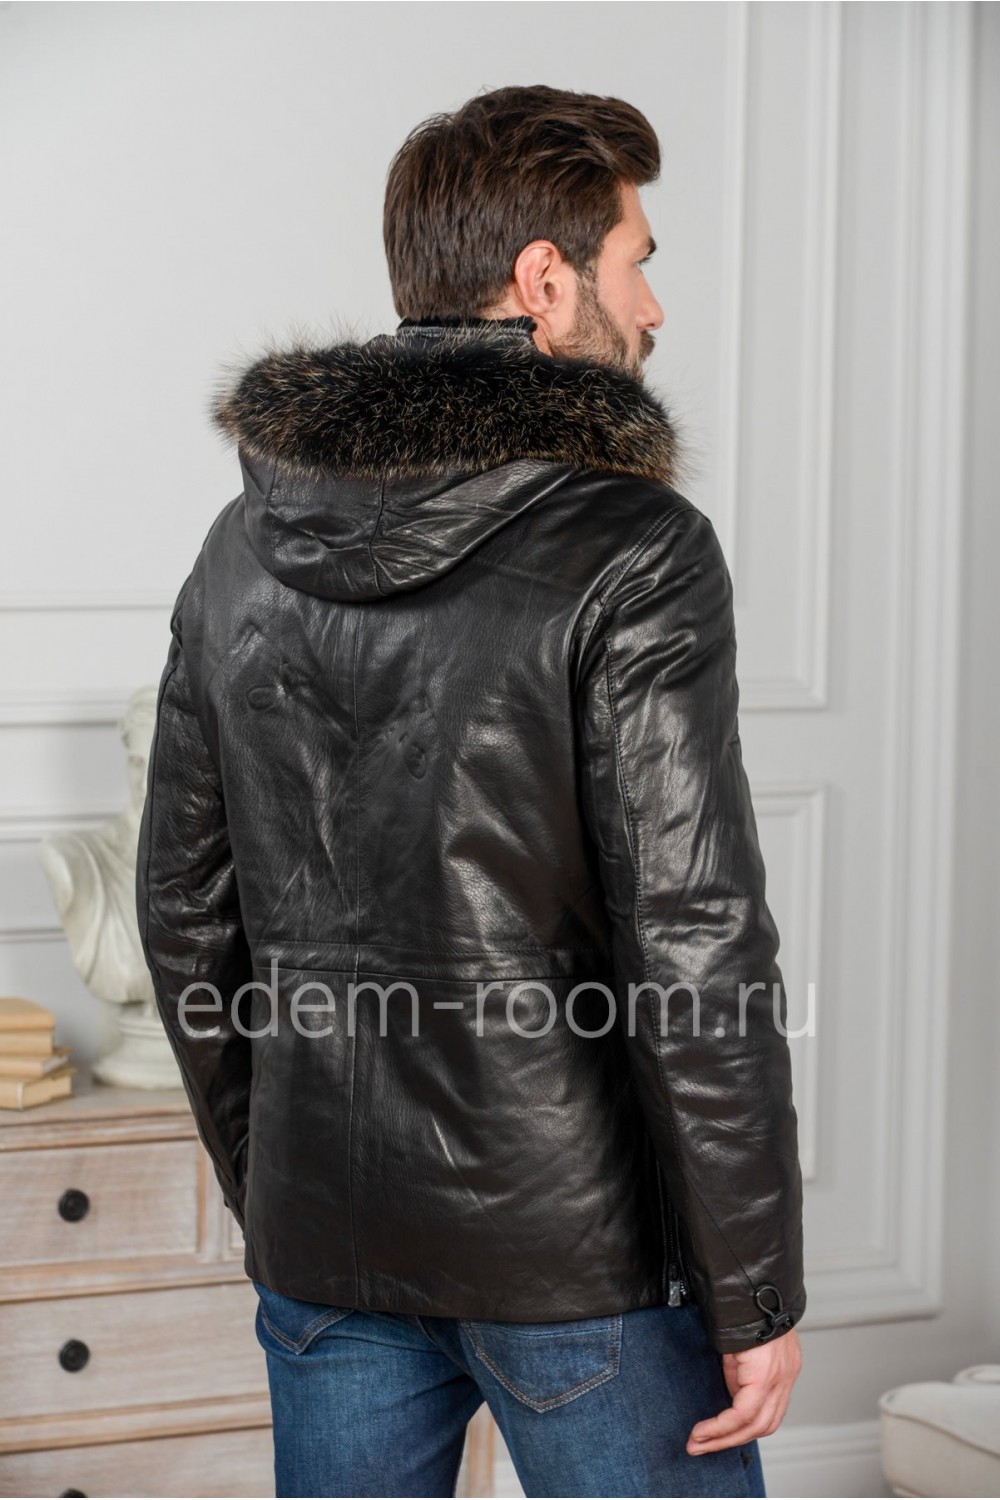 Зимняя куртка из кожи на Thinsulate